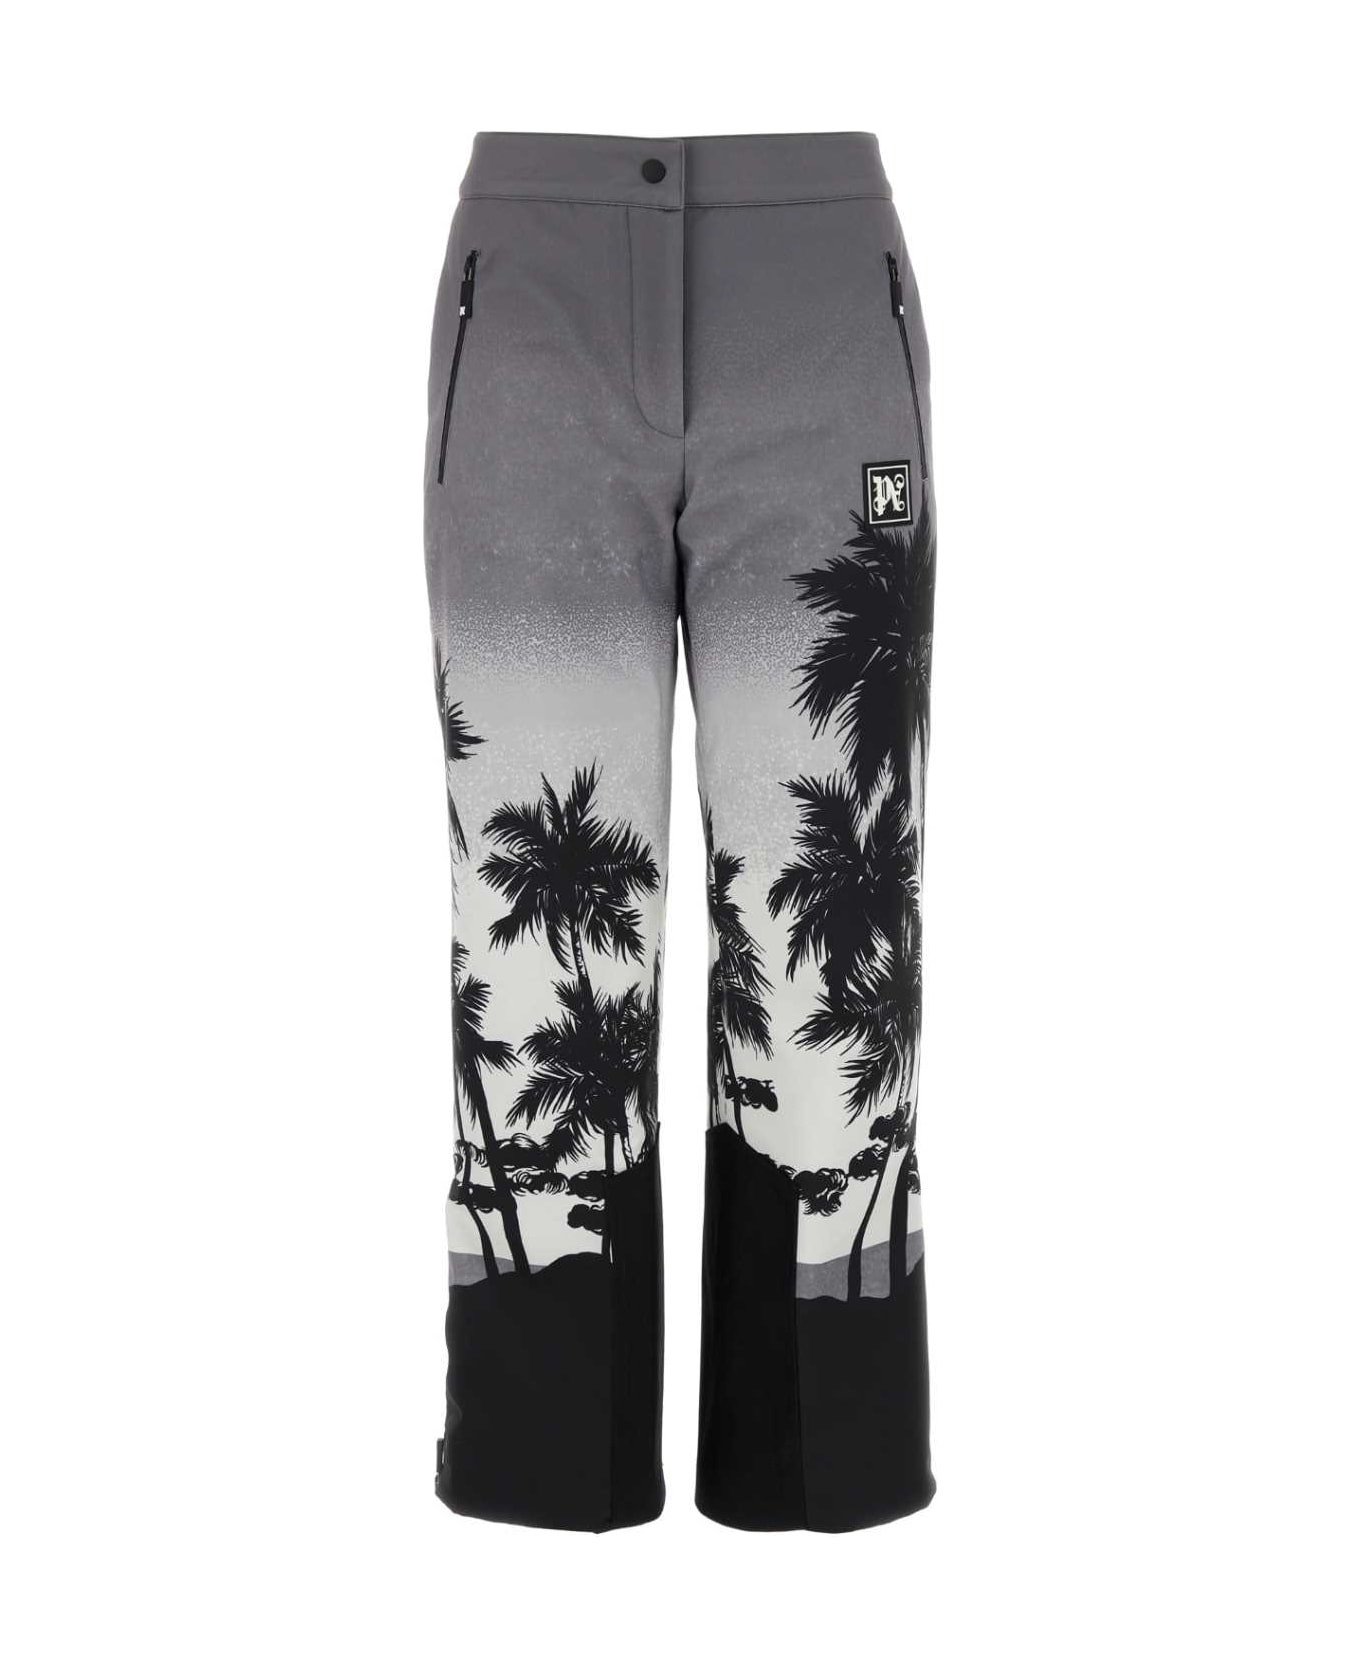 Palm Angels Printed Ski Pant - LIGHTGREYWHITE ボトムス